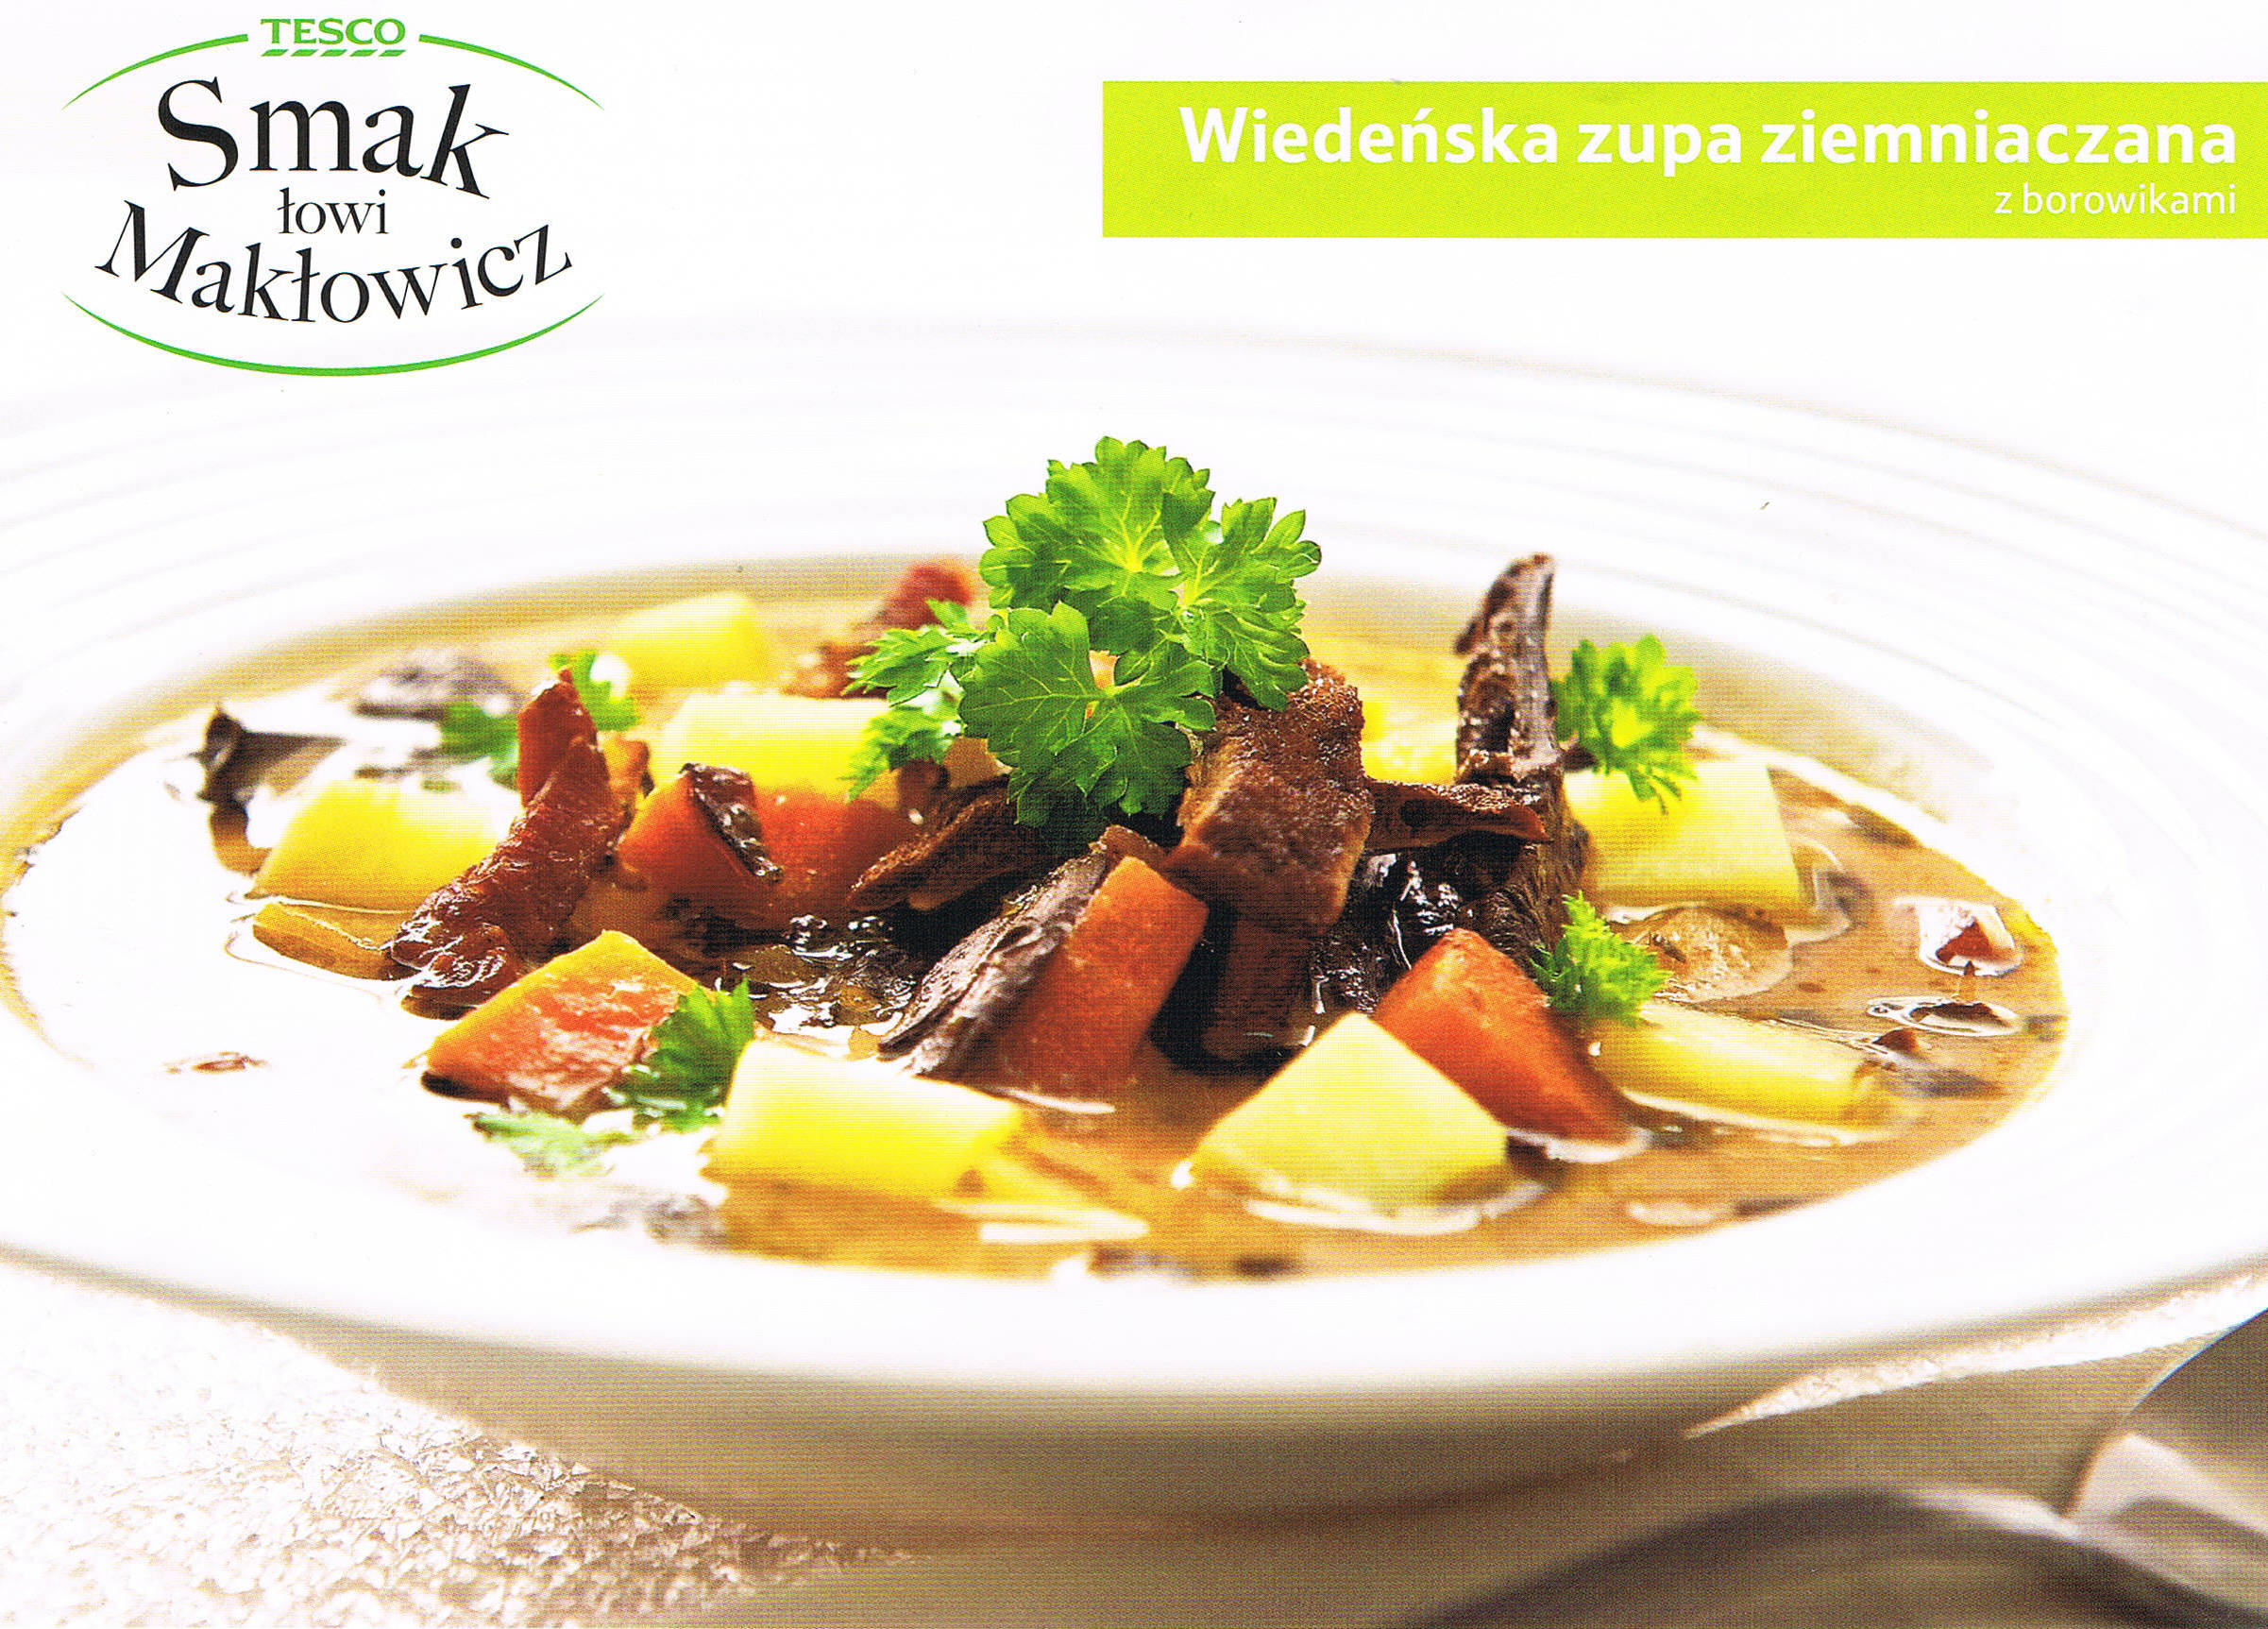 PRAWDZIWE BOROWIK SZLACHETNY - wiedeńska zupa ziemniaczana z borowikami 1.jpg